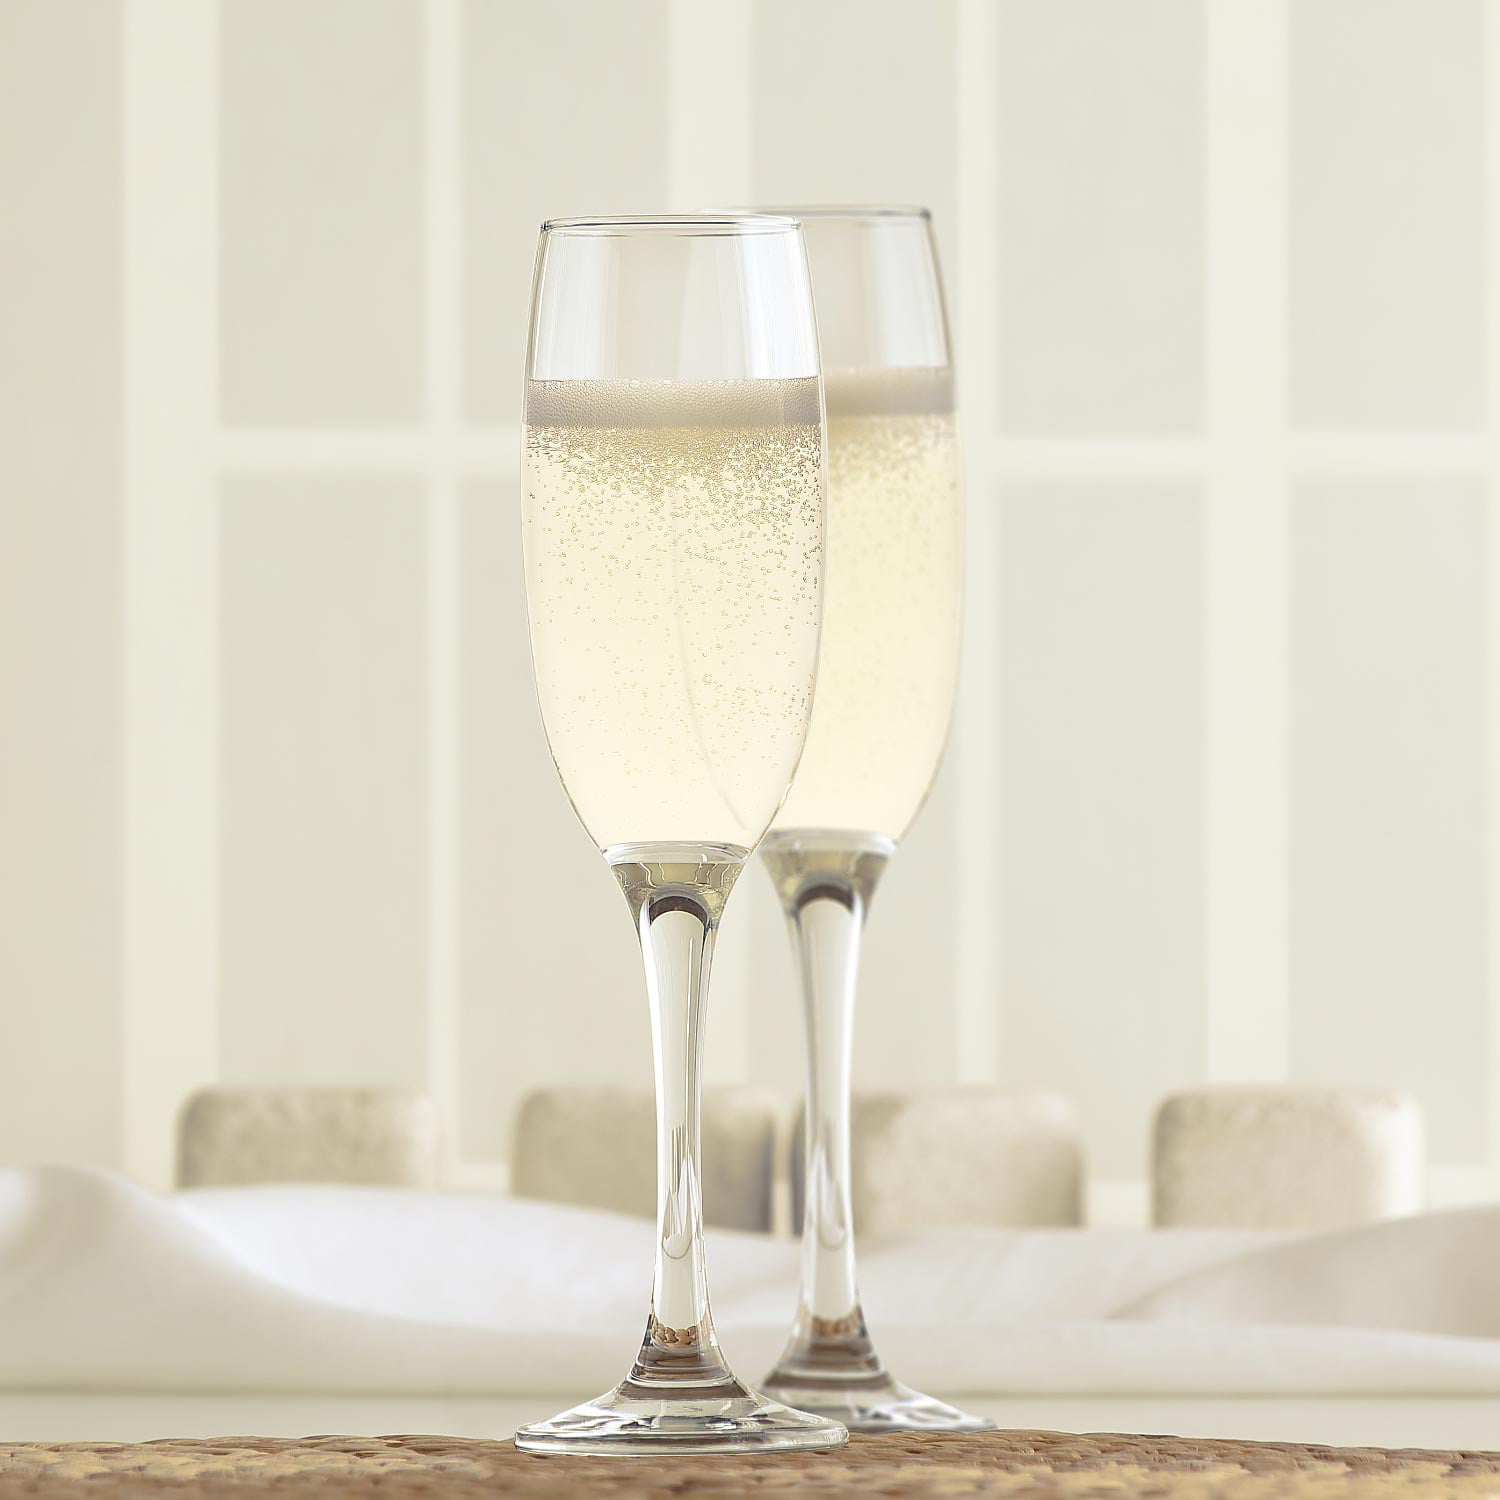 Champagne Flutes Set of 4 - 6 oz Champagne Glasses, European Mimosa  Glasses, Square Champagne Flute,…See more Champagne Flutes Set of 4 - 6 oz